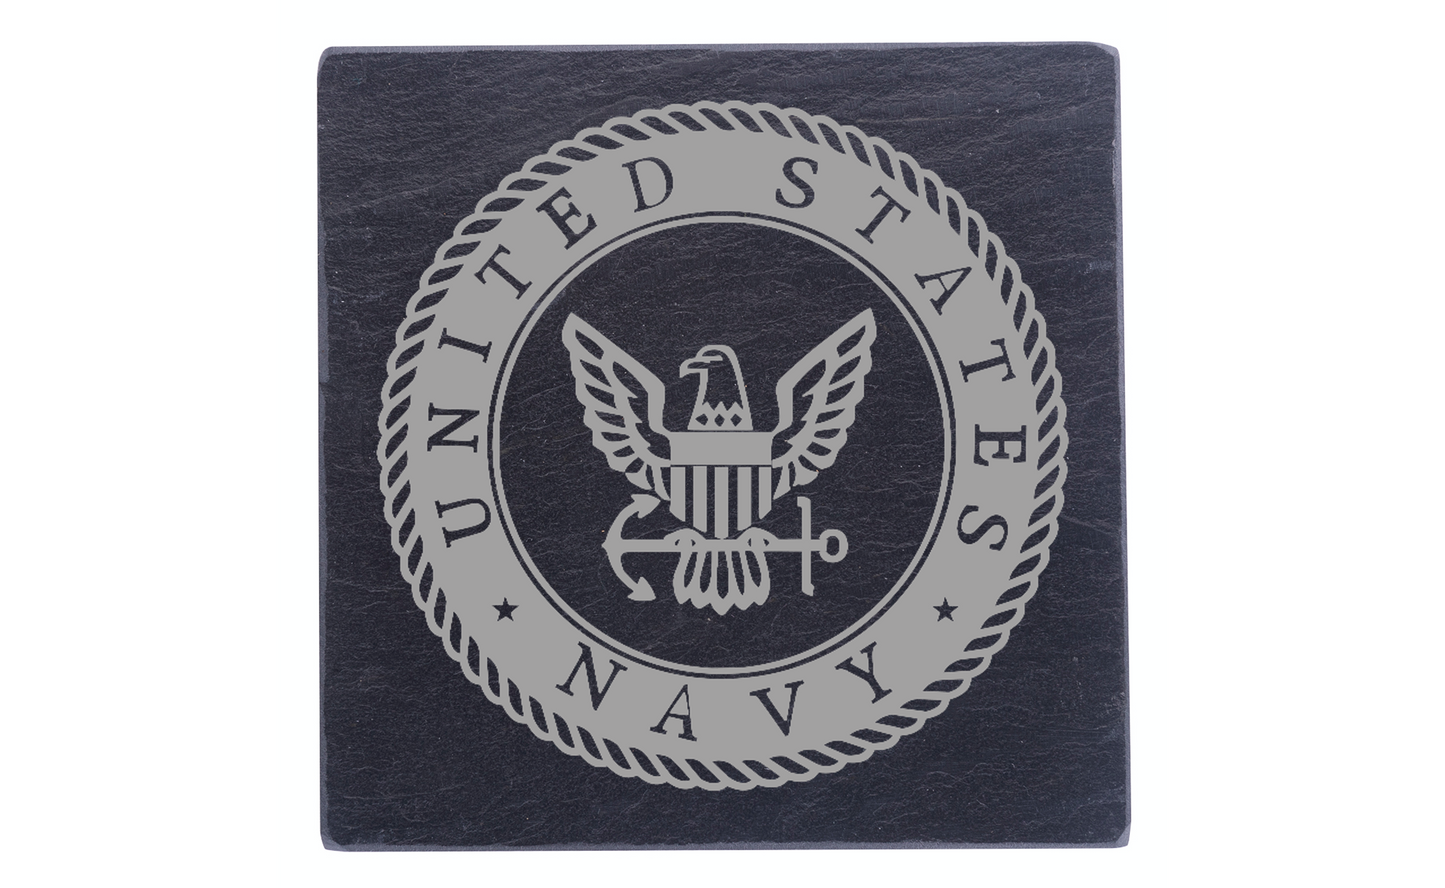 US Navy Emblem